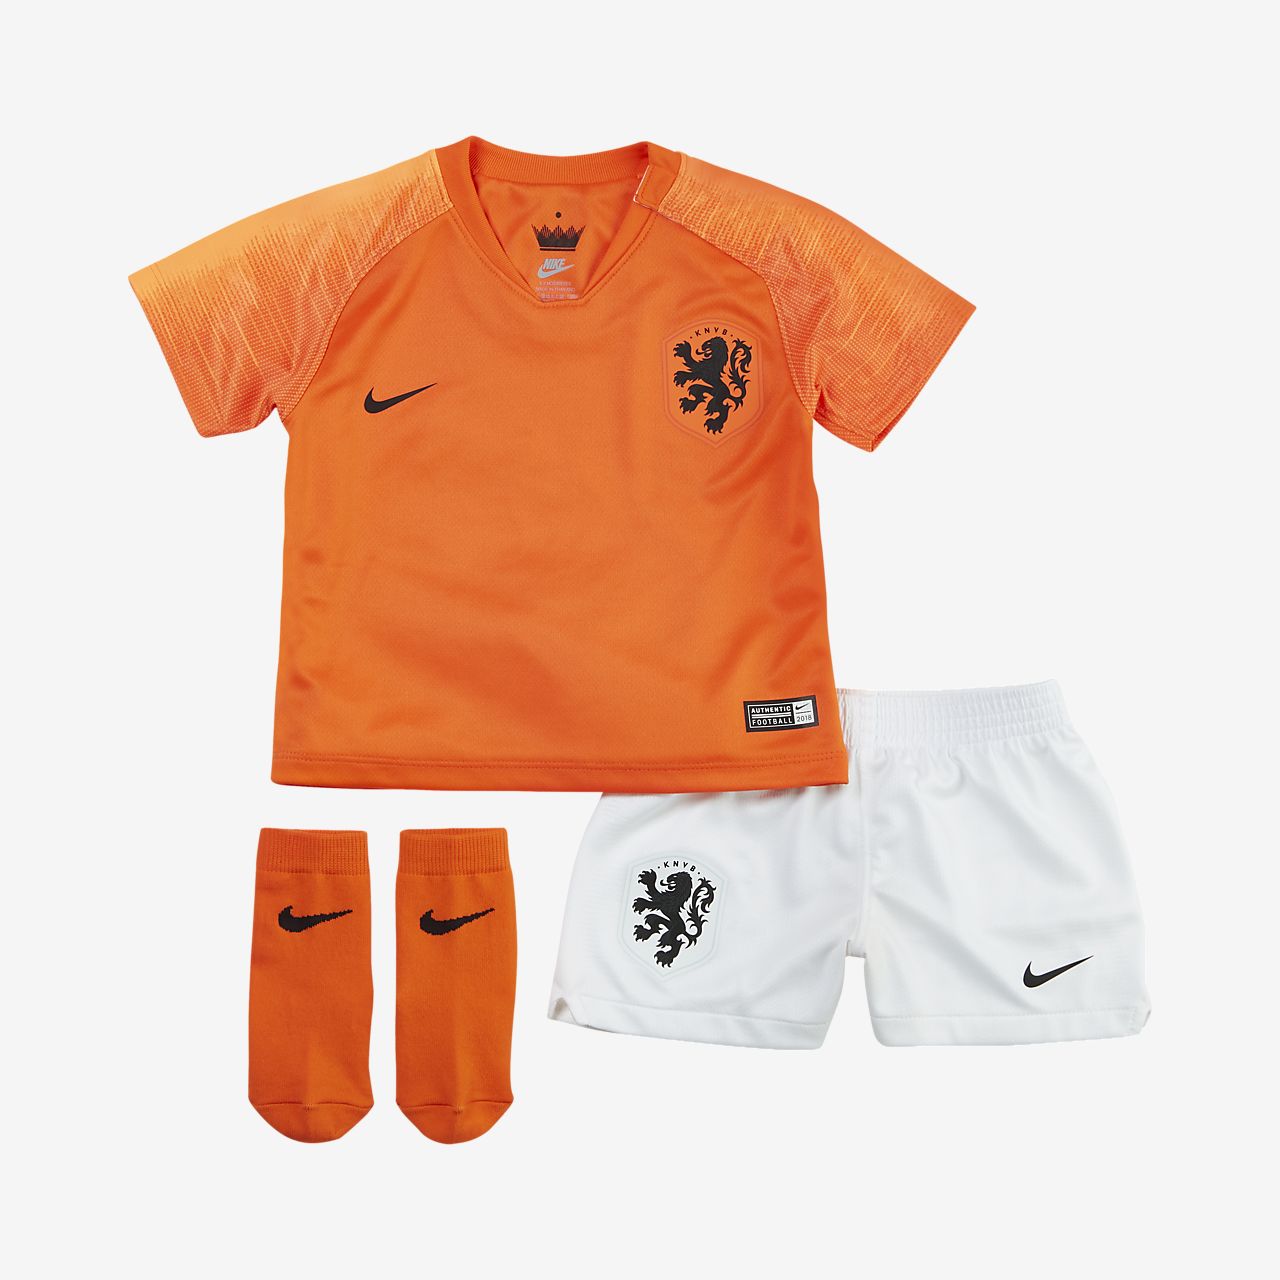 Toddler Football Kit. Nike SI